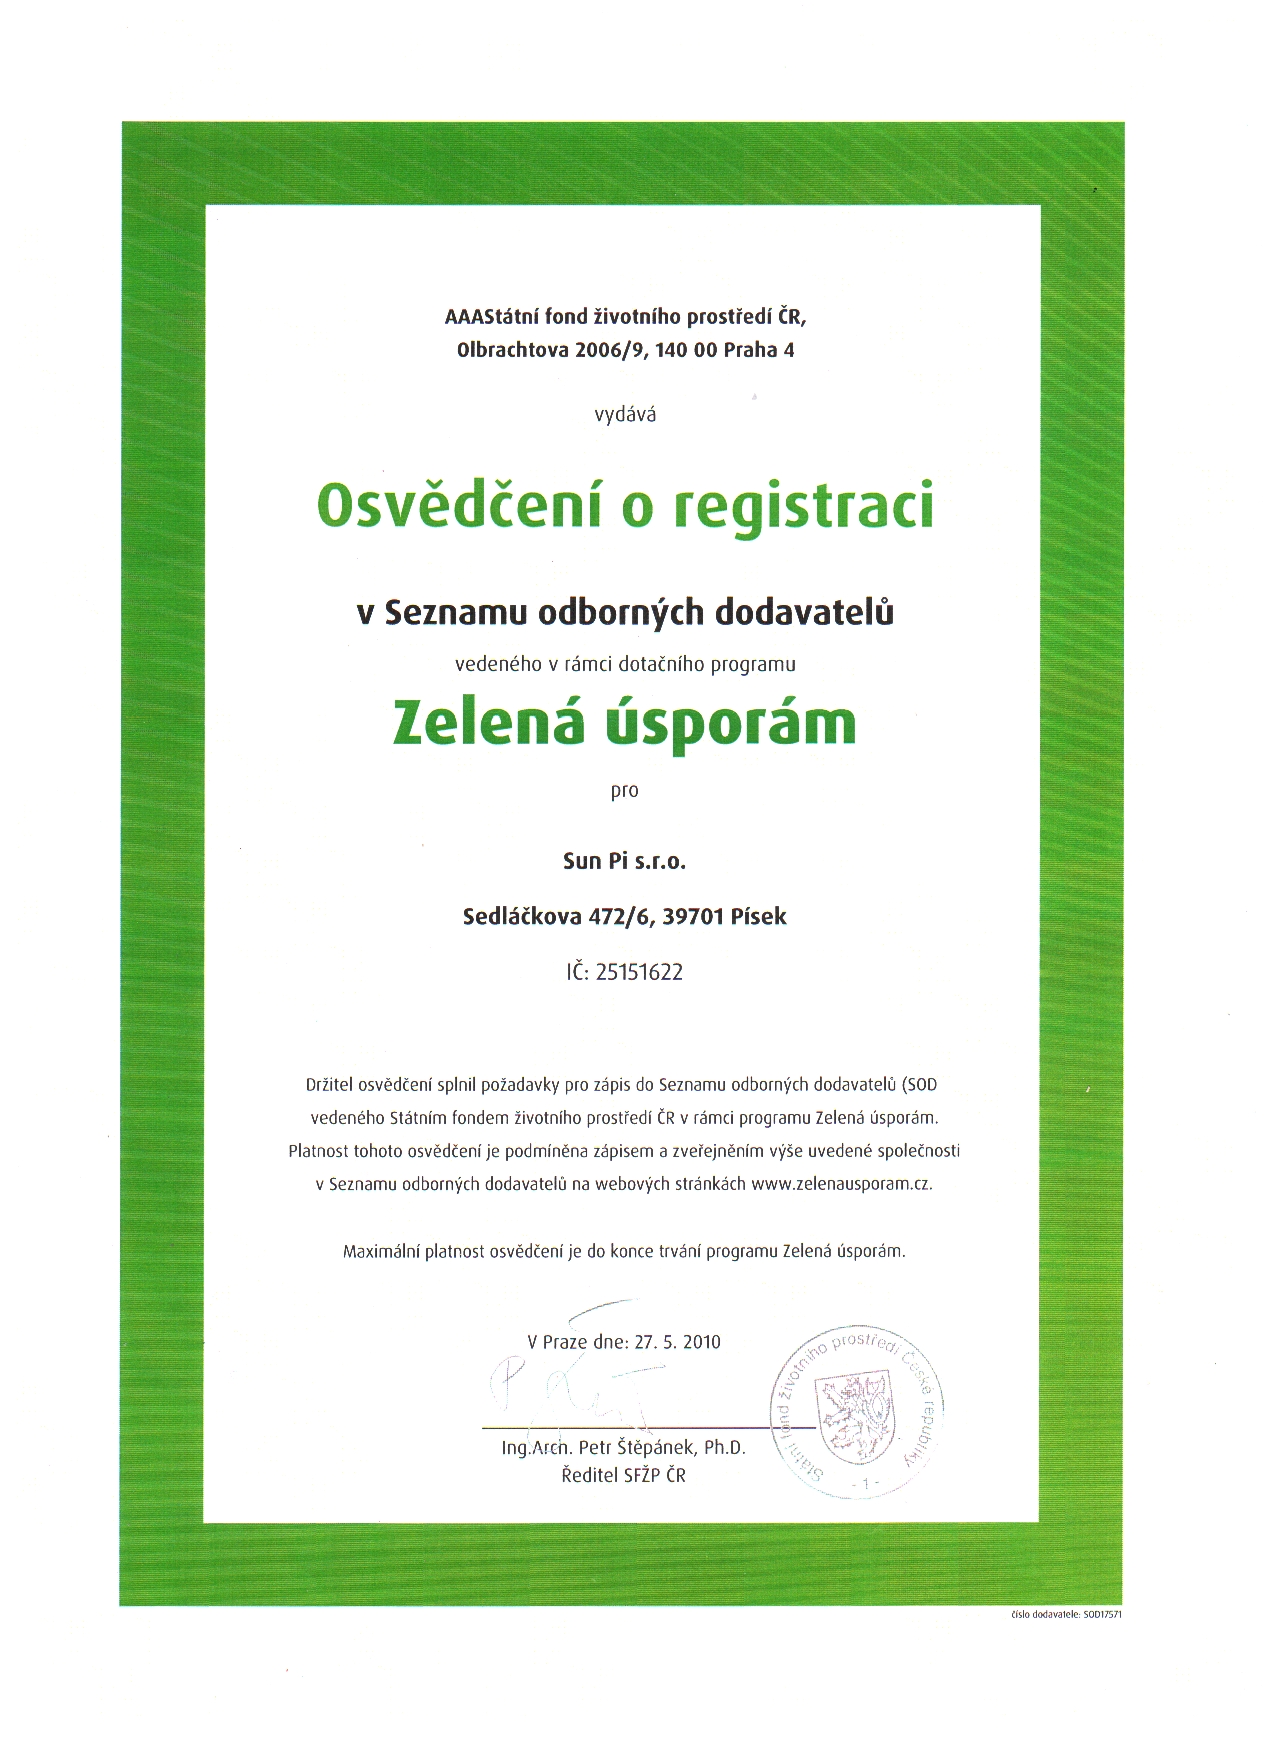 Zelená úsporám - osvěčení o registraci v SOD